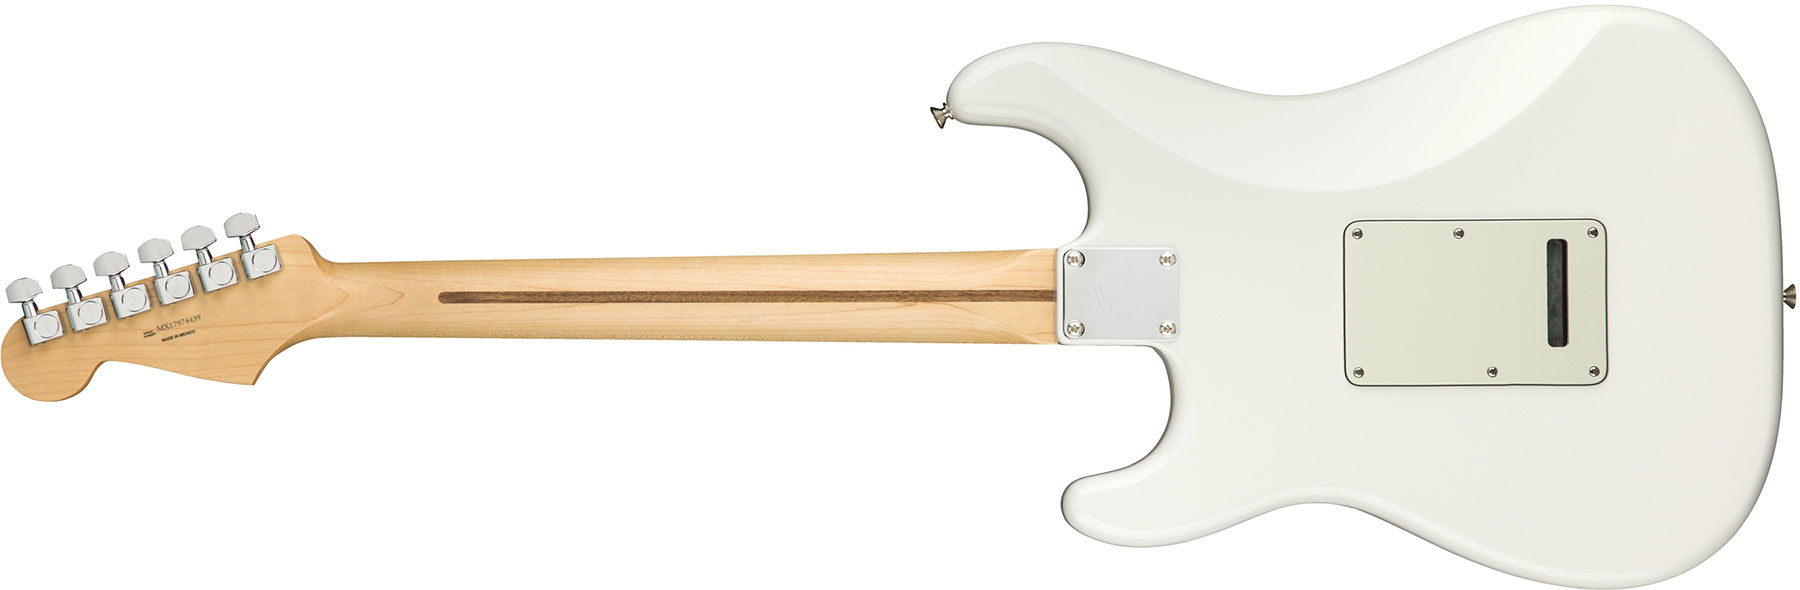 Fender Strat Player Mex Sss Pf - Polar White - Elektrische gitaar in Str-vorm - Variation 1